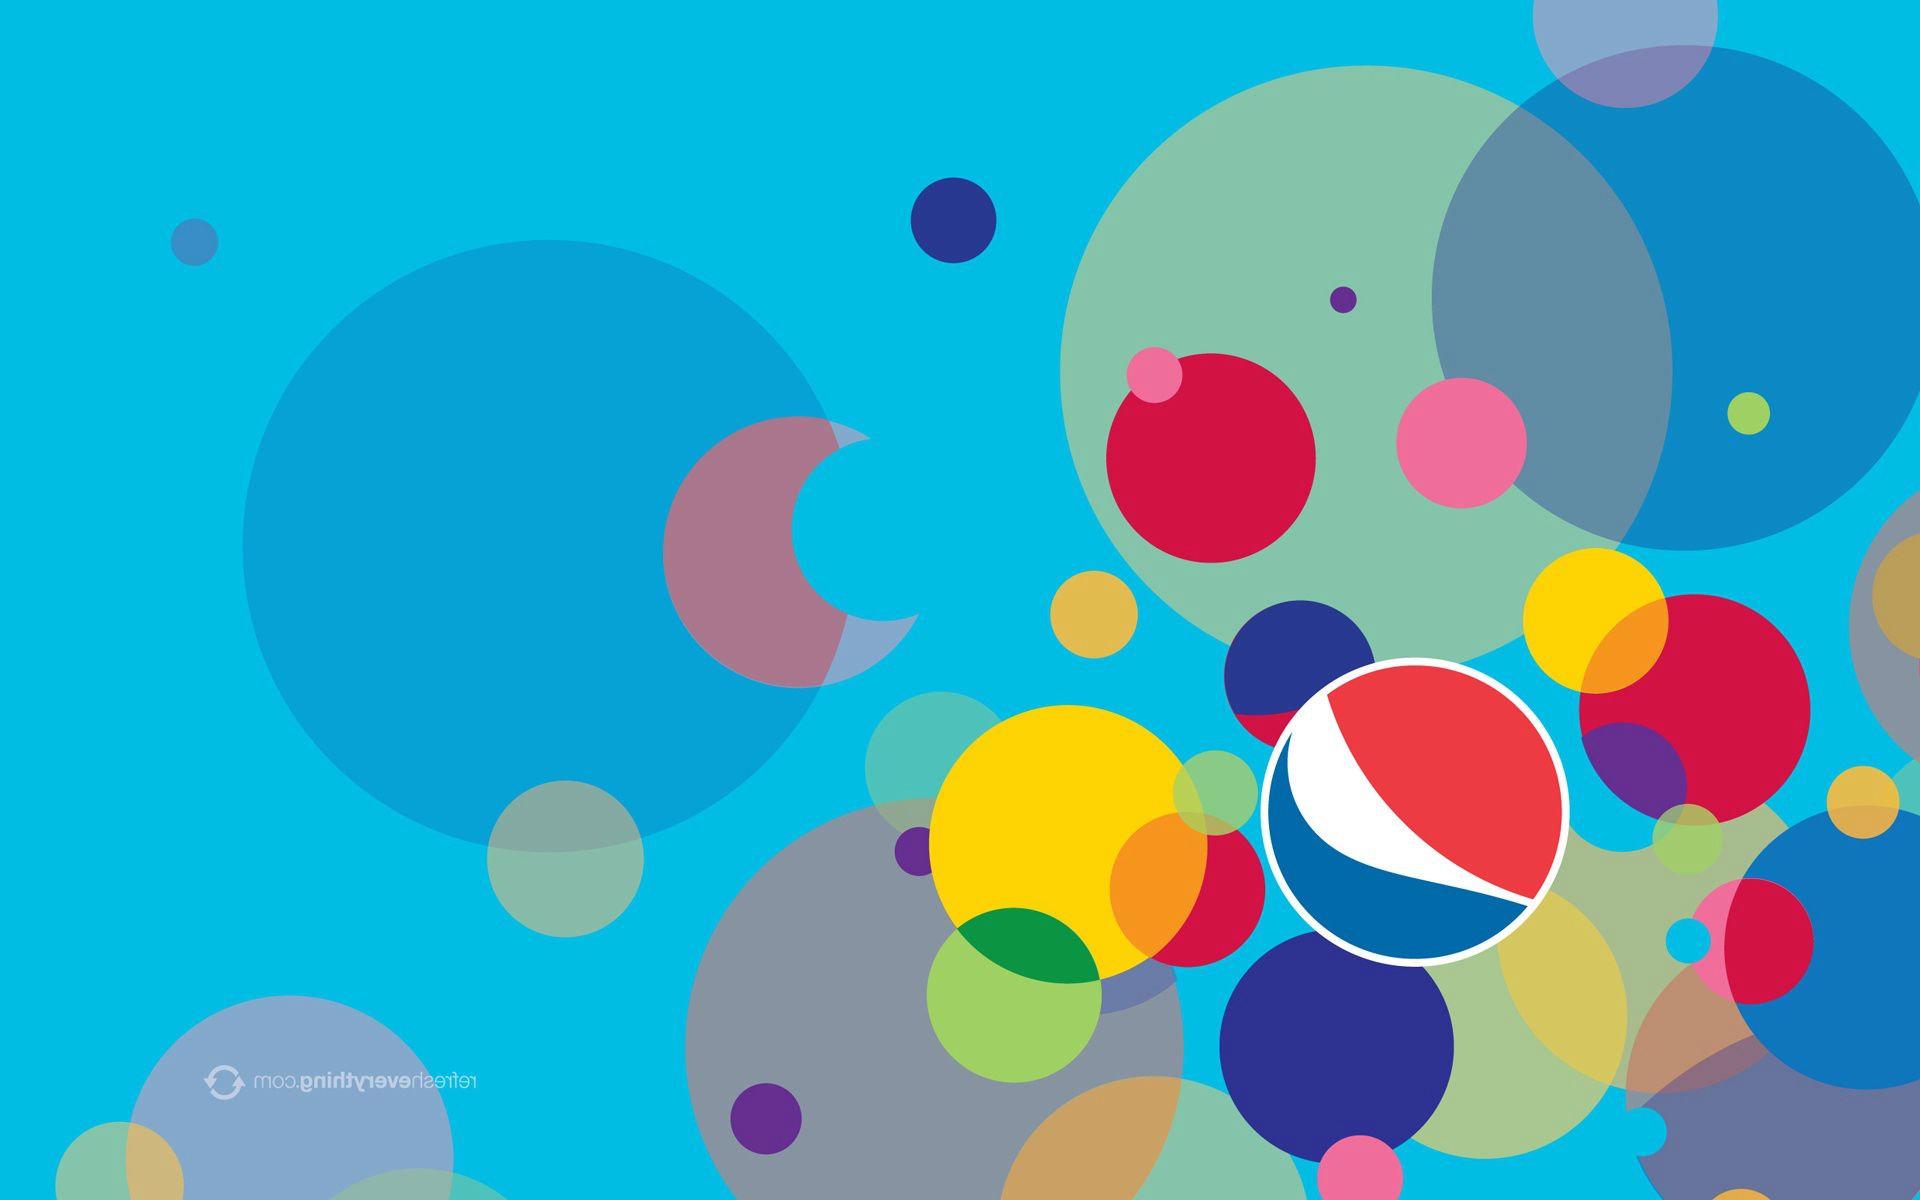 Pepsi Wallpaper Desktop images